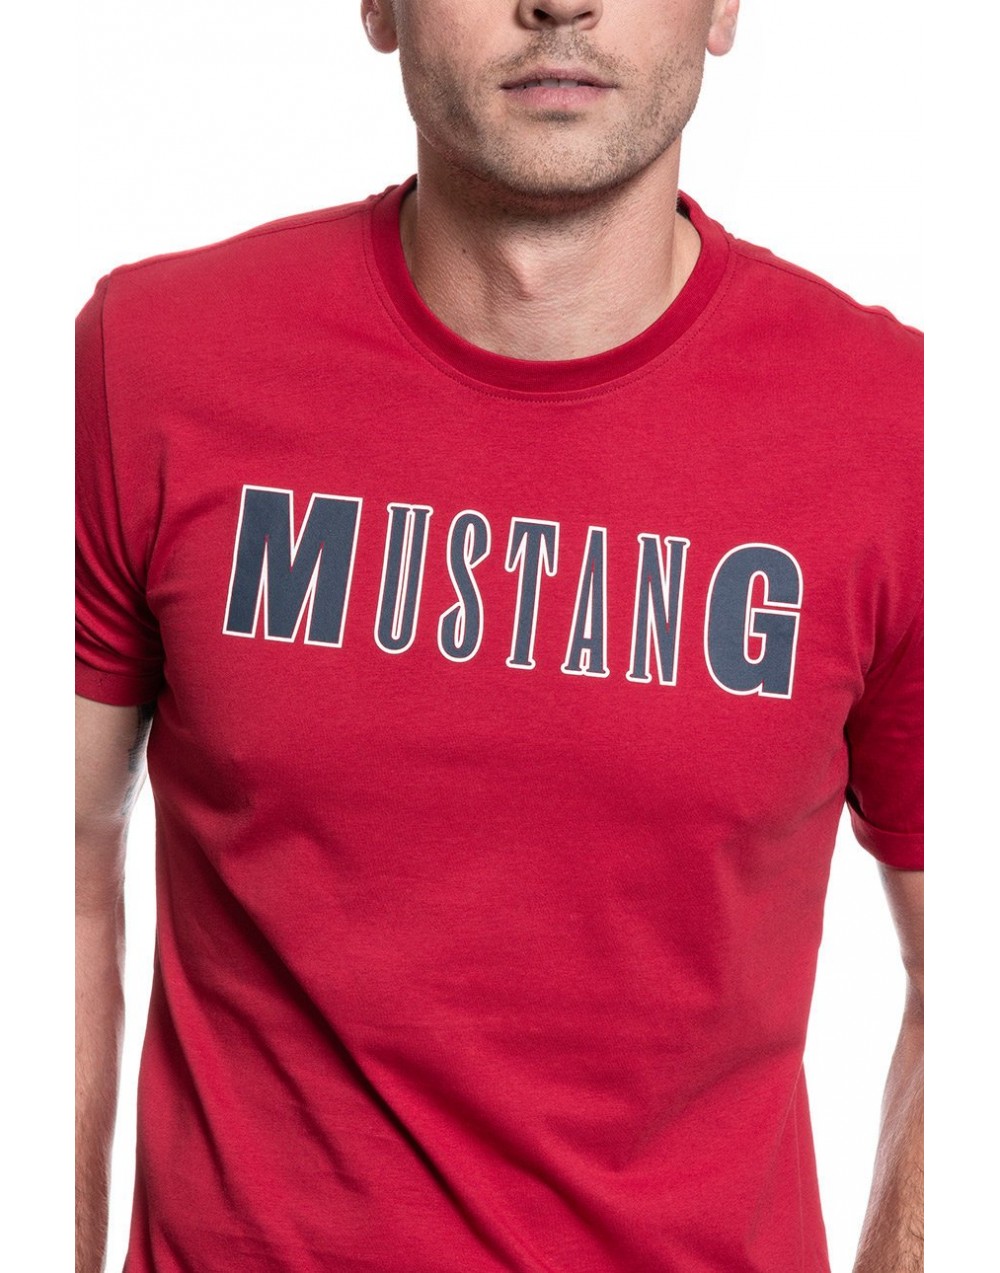 T-shirt Mustang  Alex C LOGO Tee 1010708 7189